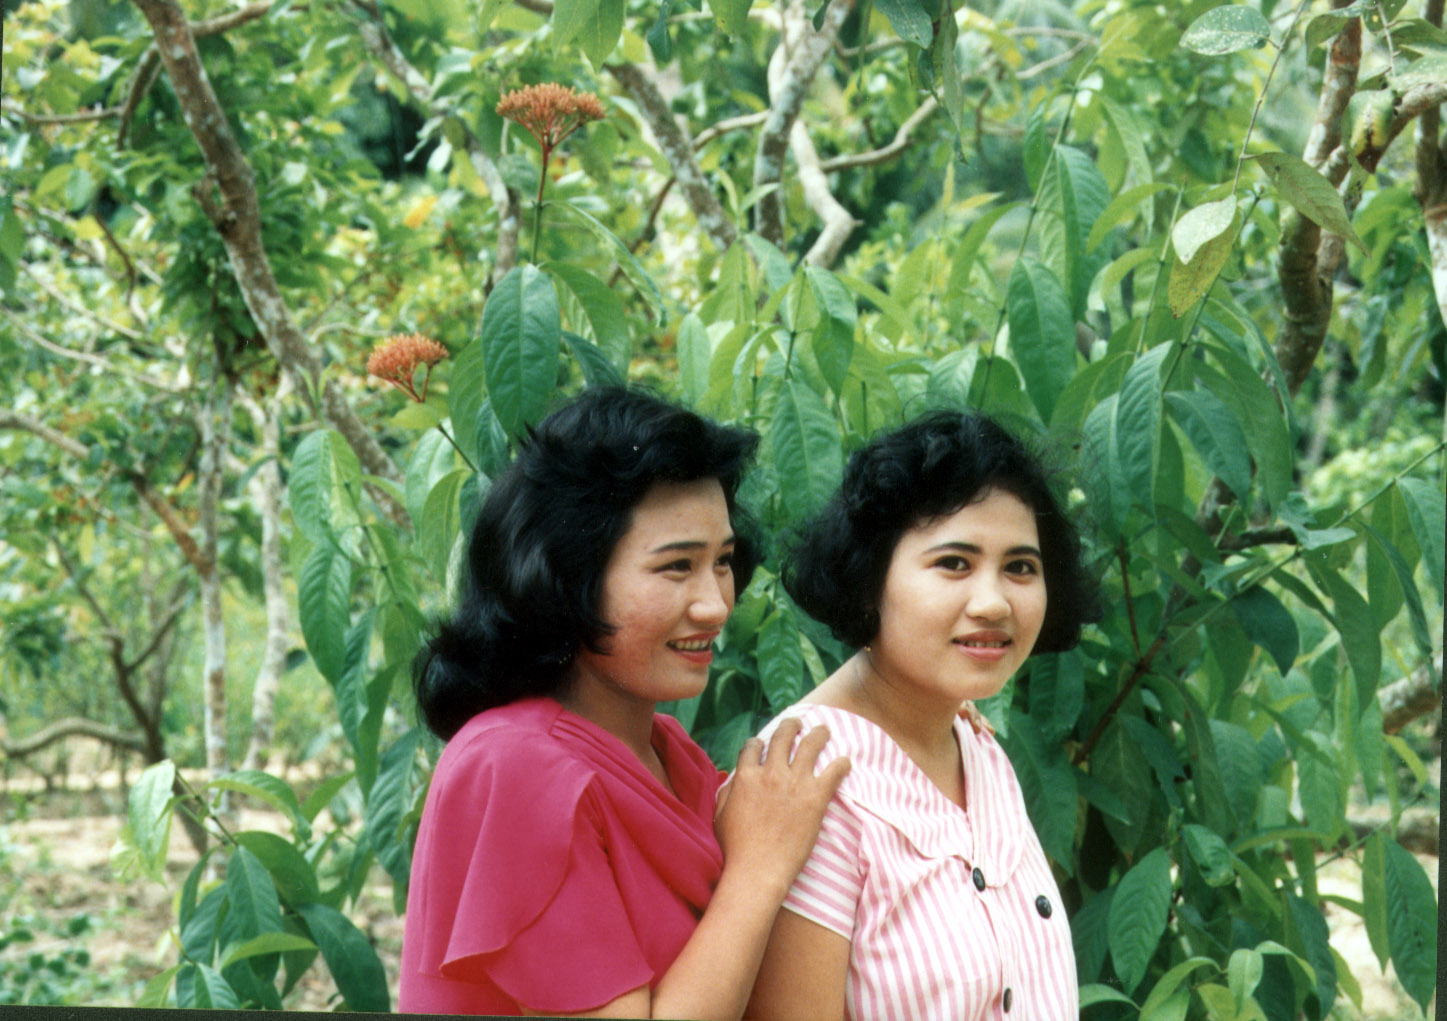 Taken in 1995 in Nhà Vĩnh Hòa.